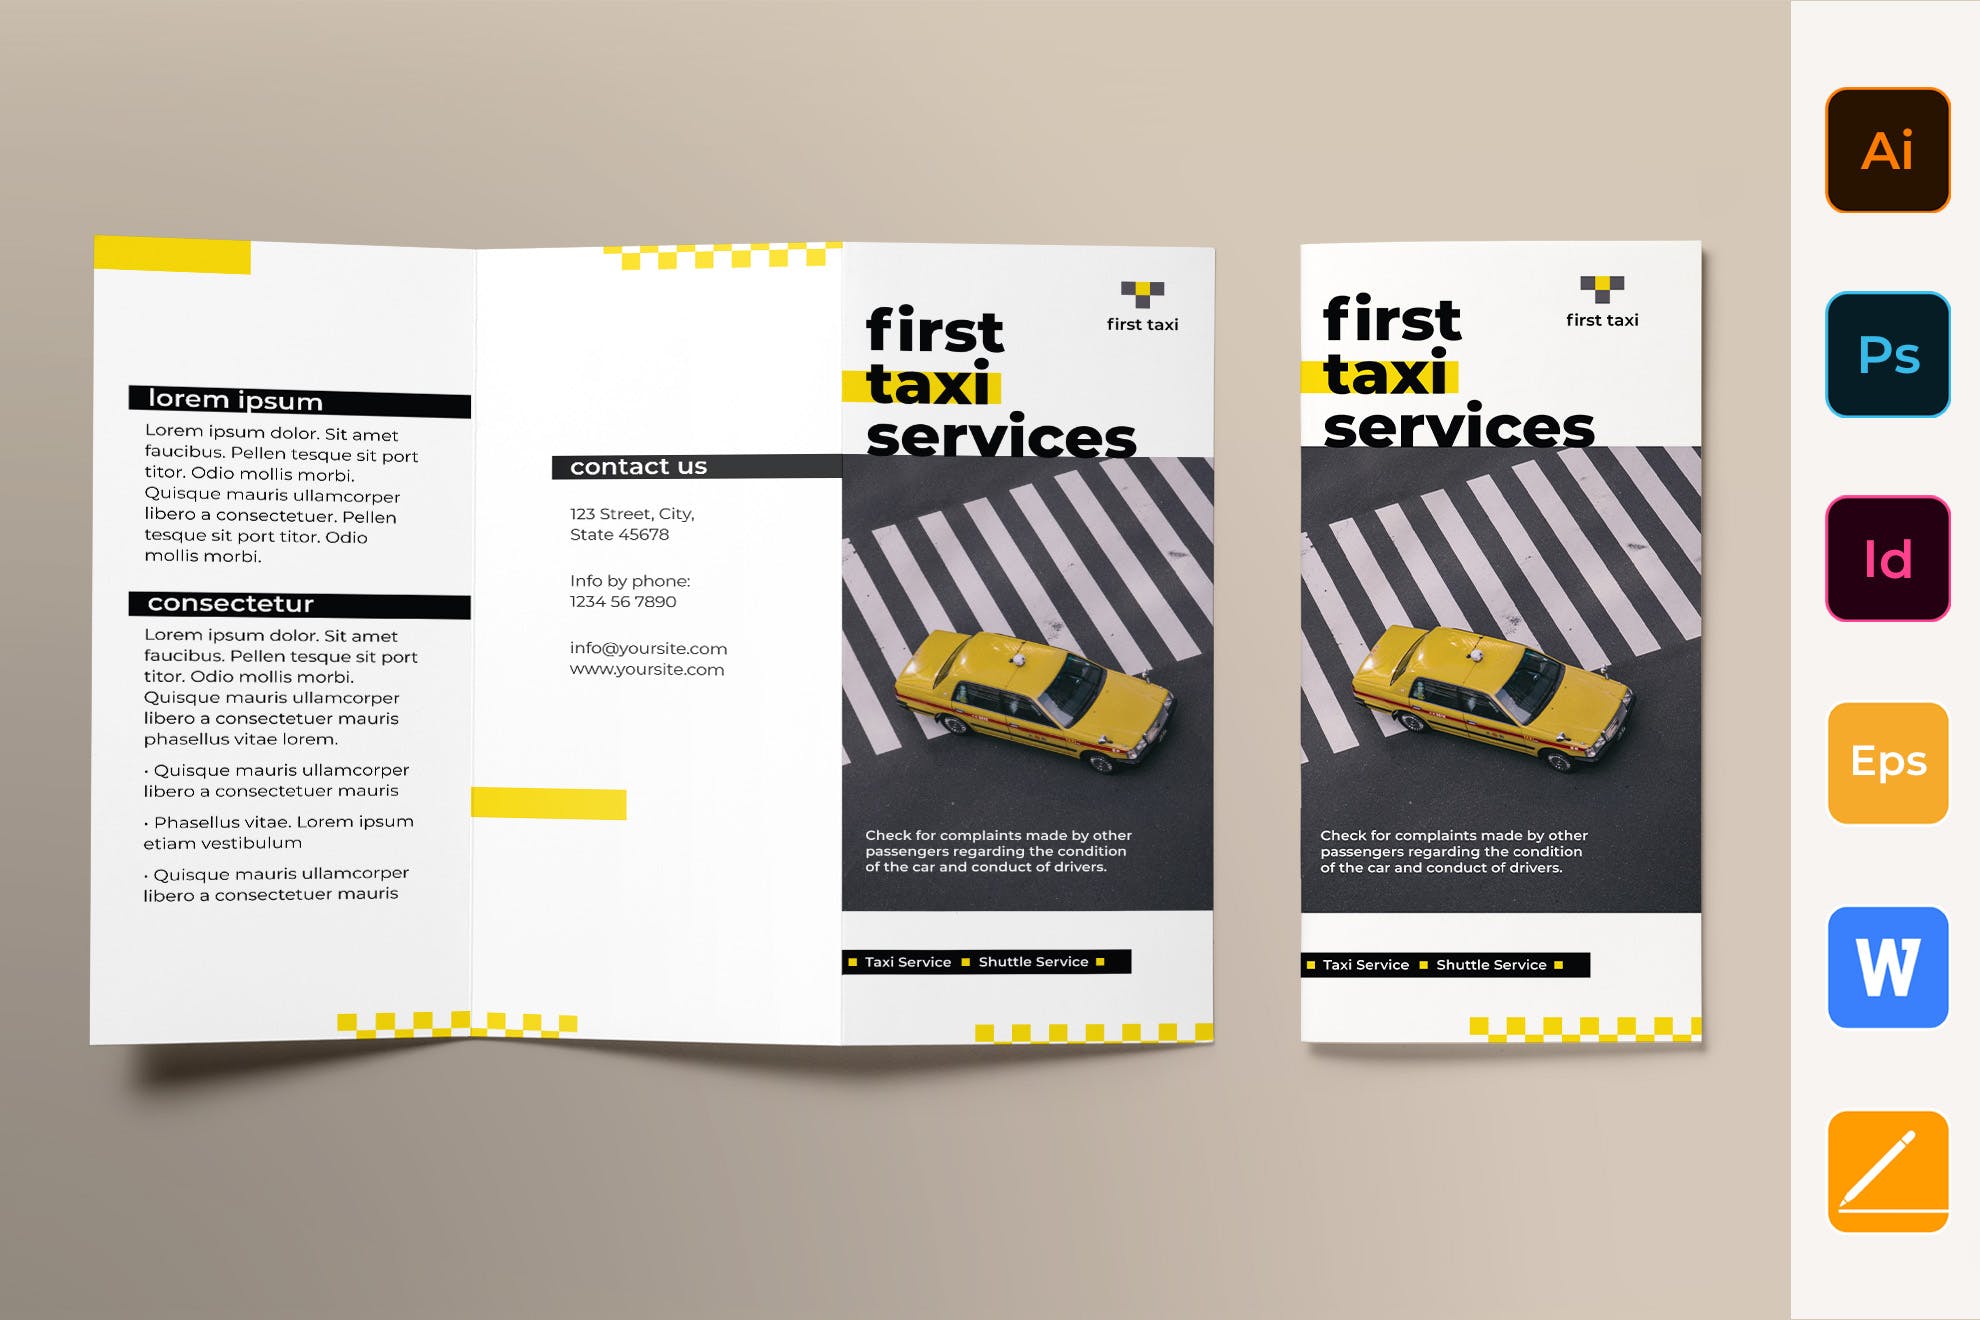 出租车/网约车服务三折页传单设计模板 Taxi Services Brochure Trifold插图